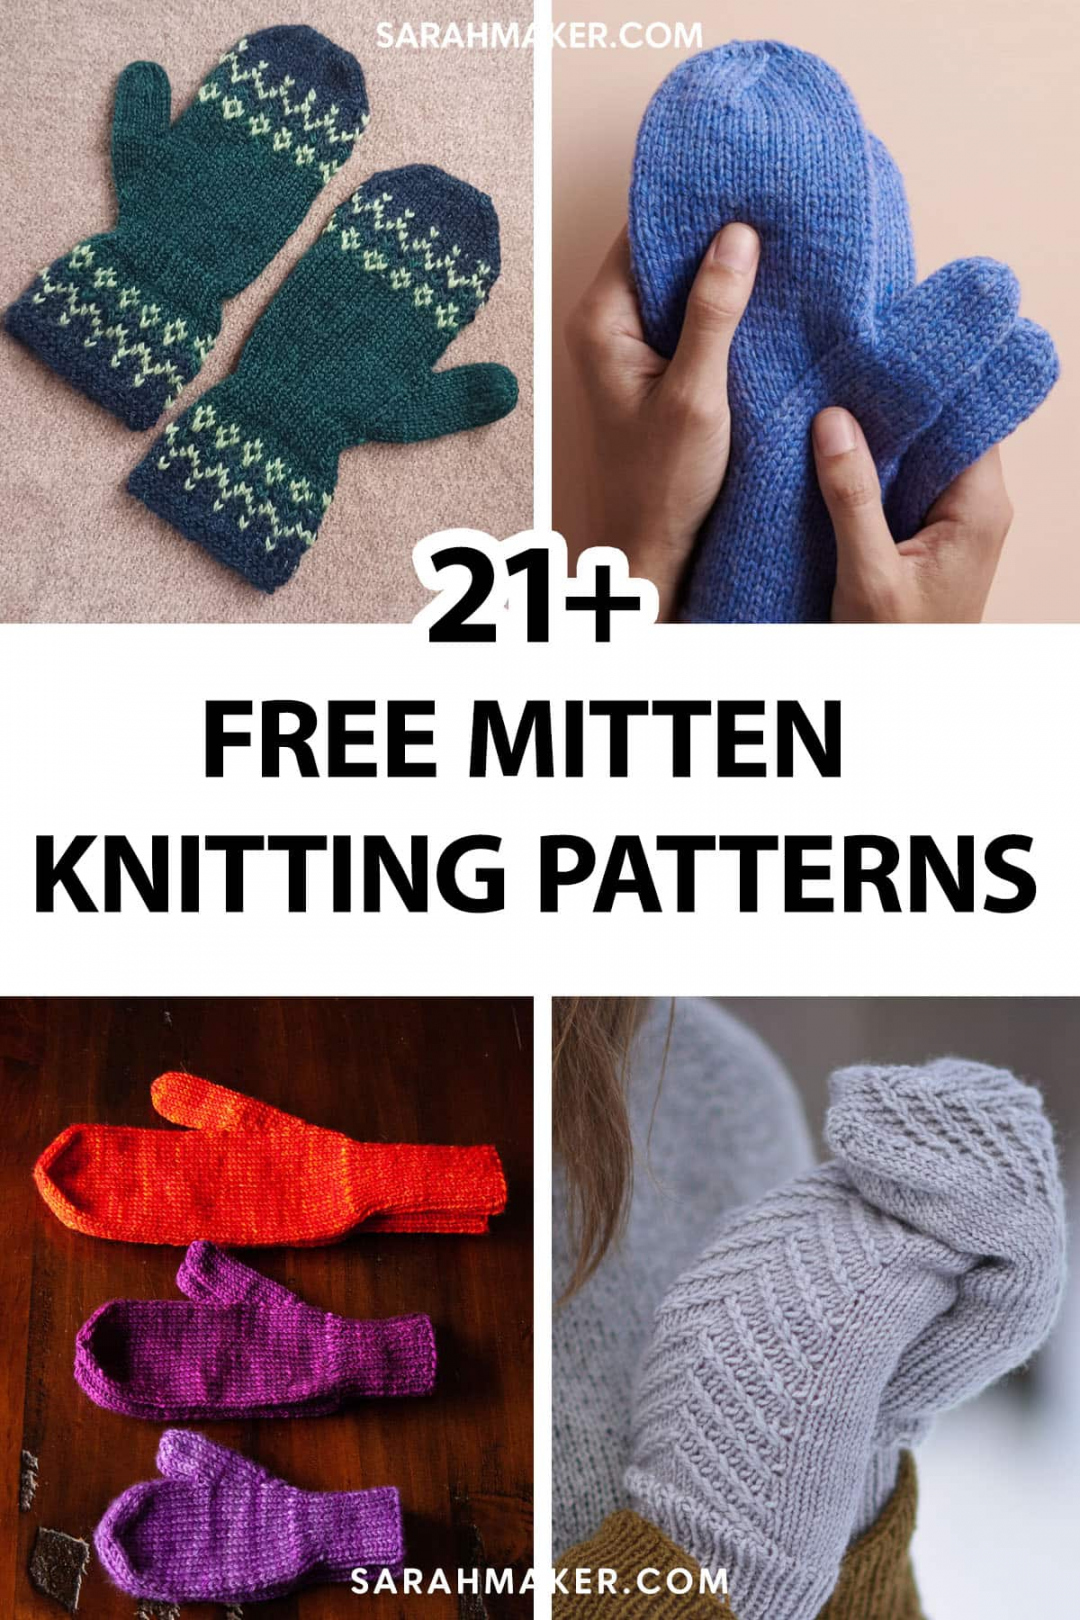 Free Mitten Knitting Patterns - Sarah Maker - FREE Printables - Mitten Pattern